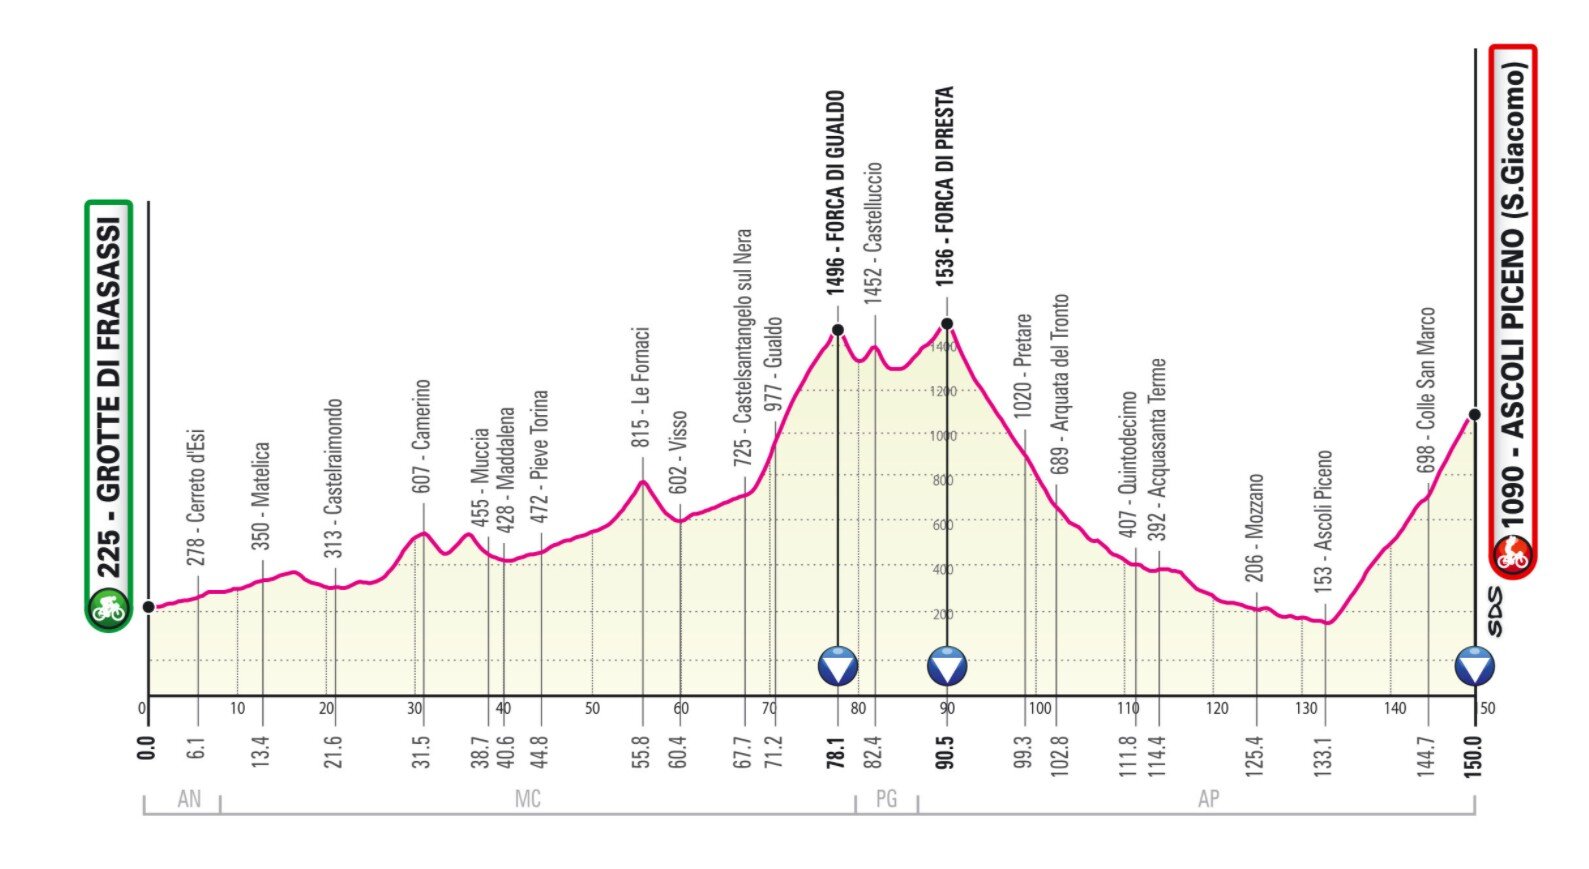 Etapa 6 Giro Italia 2021